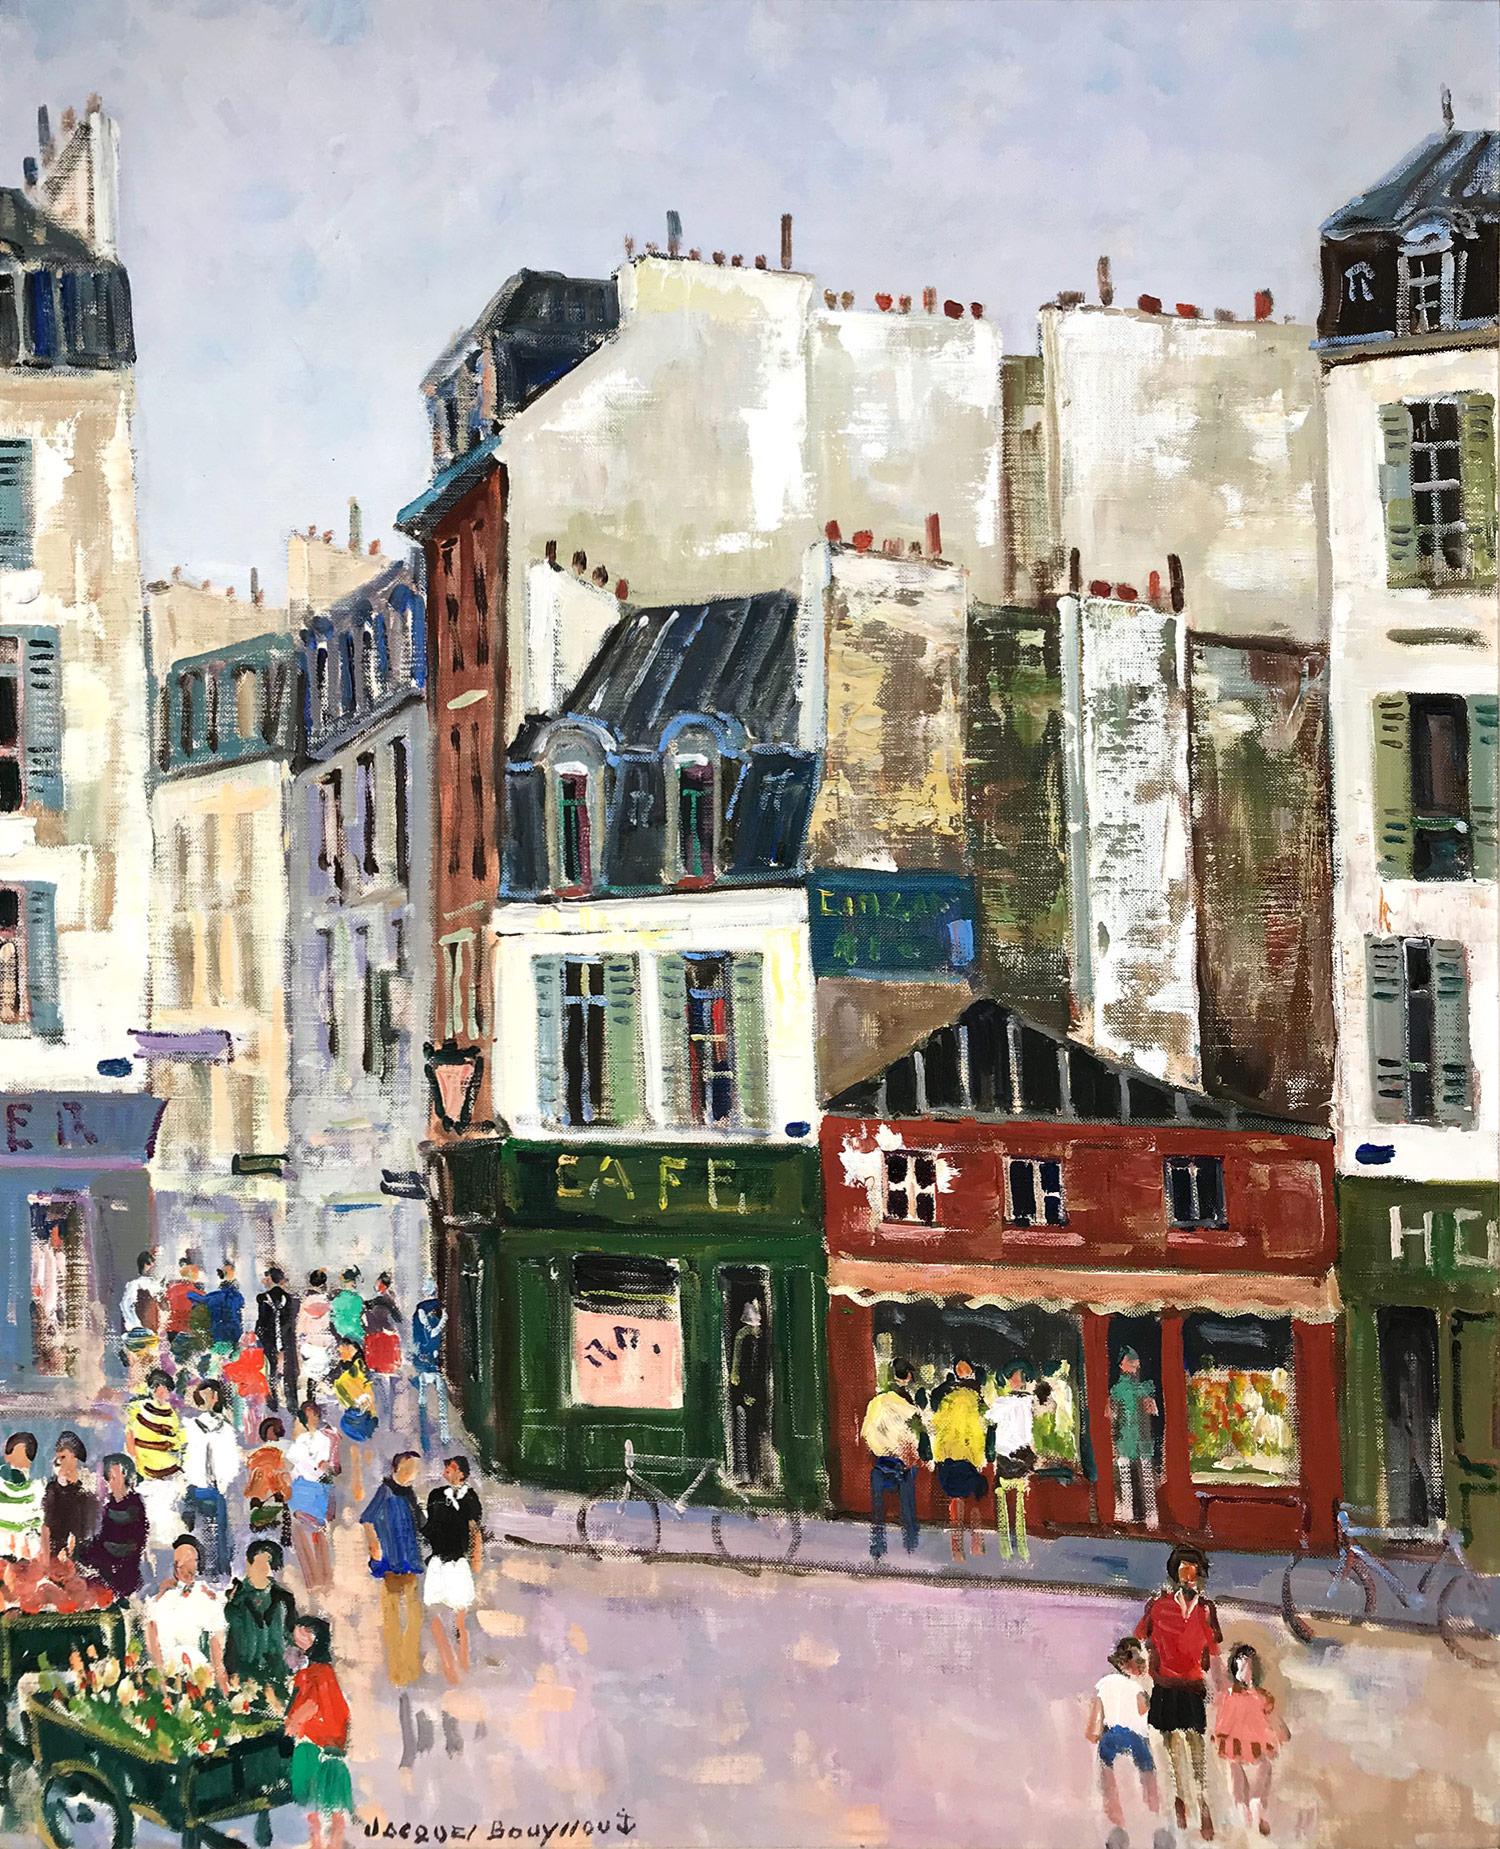 Paris, Le Petit Marché - Painting by Jacques Bouyssou